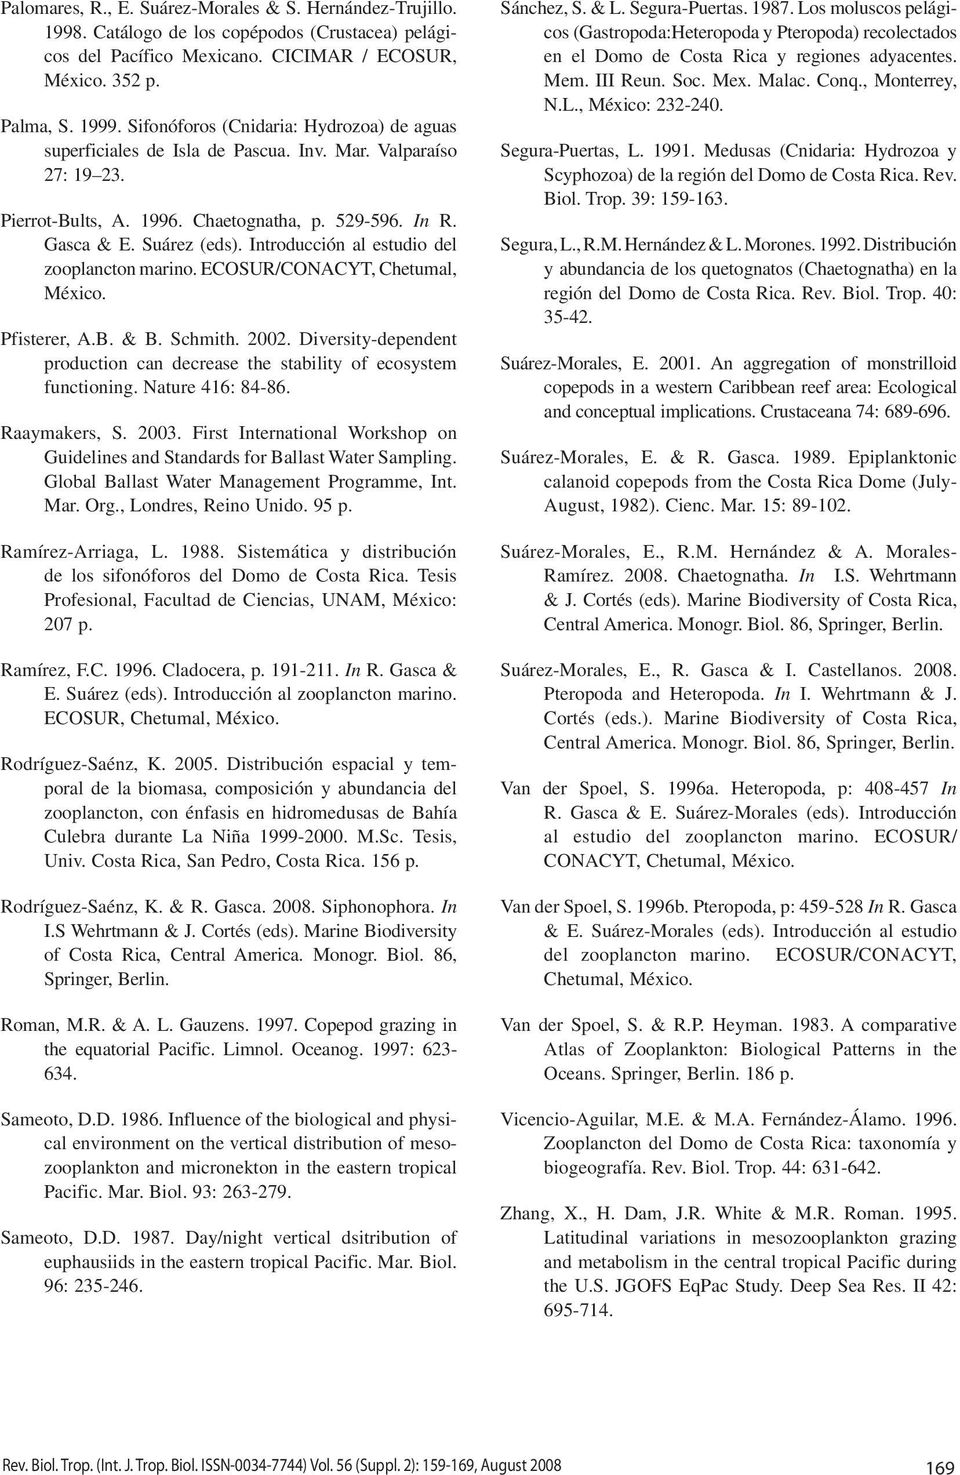 Introducción al estudio del zooplancton marino. ECOSUR/CONACYT, Chetumal, México. Pfisterer, A.B. & B. Schmith. 2002.